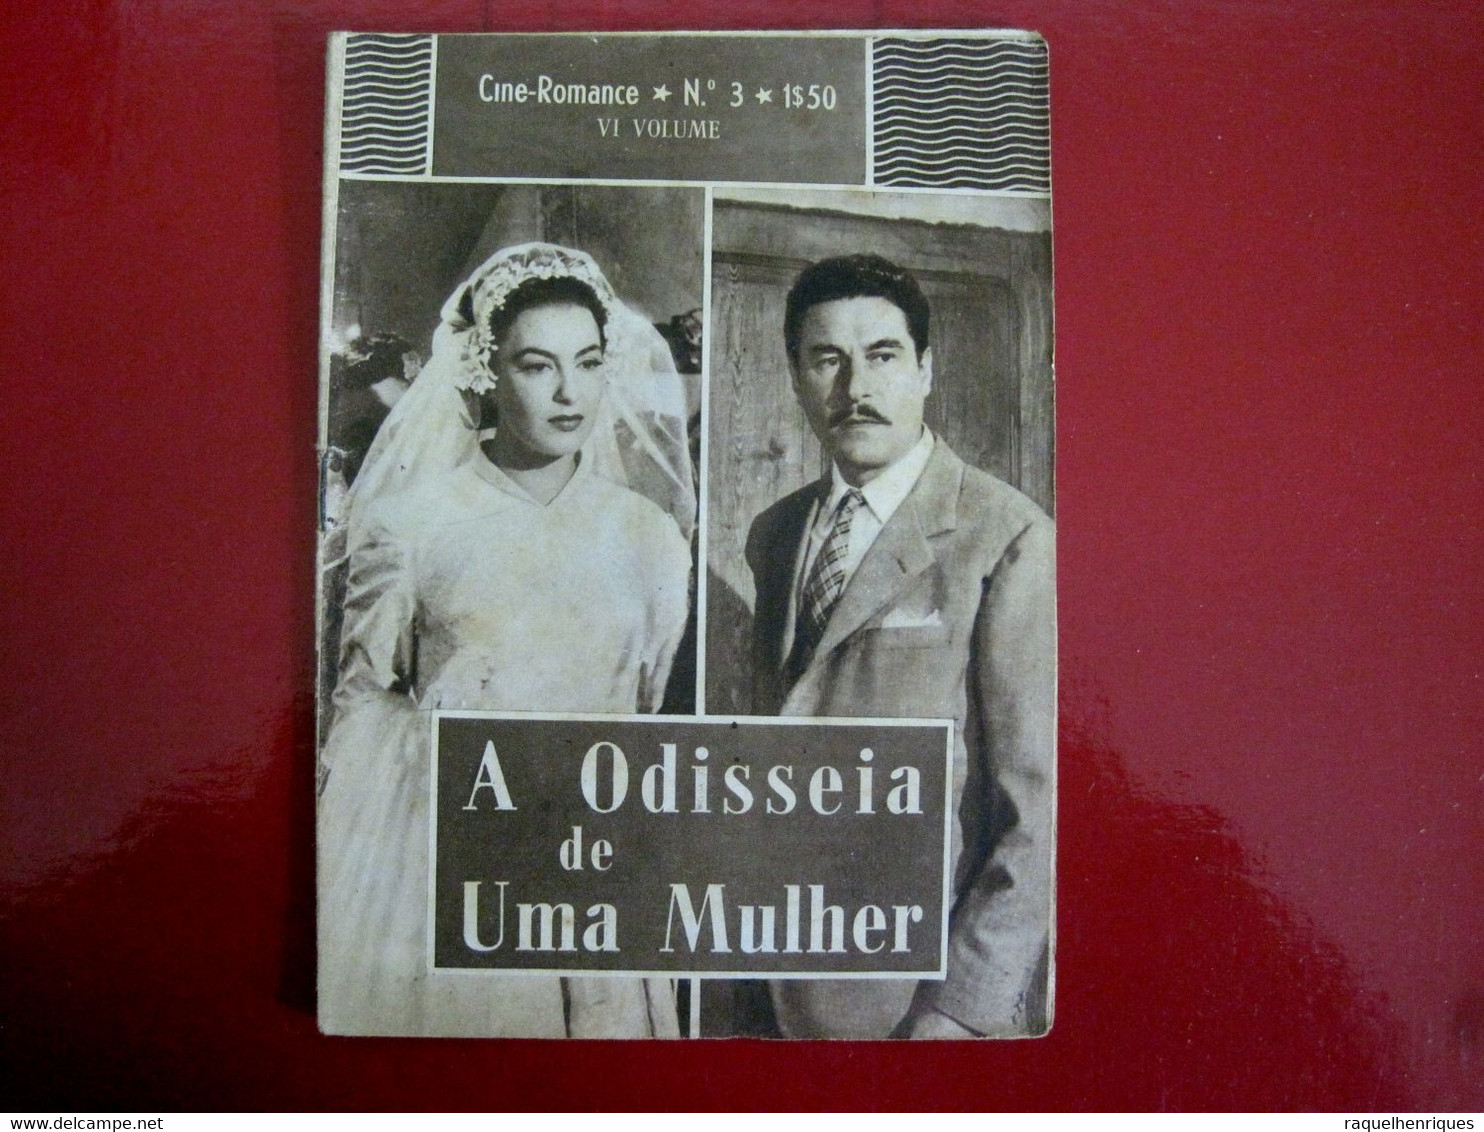 CHI E SENZA PECATTO - AMEDEO NAZZARI, YVONNE SANSON BY RAFAELLO MATARAZZO - PORTUGAL MAGAZINE - CINE ROMANCE Nº 3 - Magazines